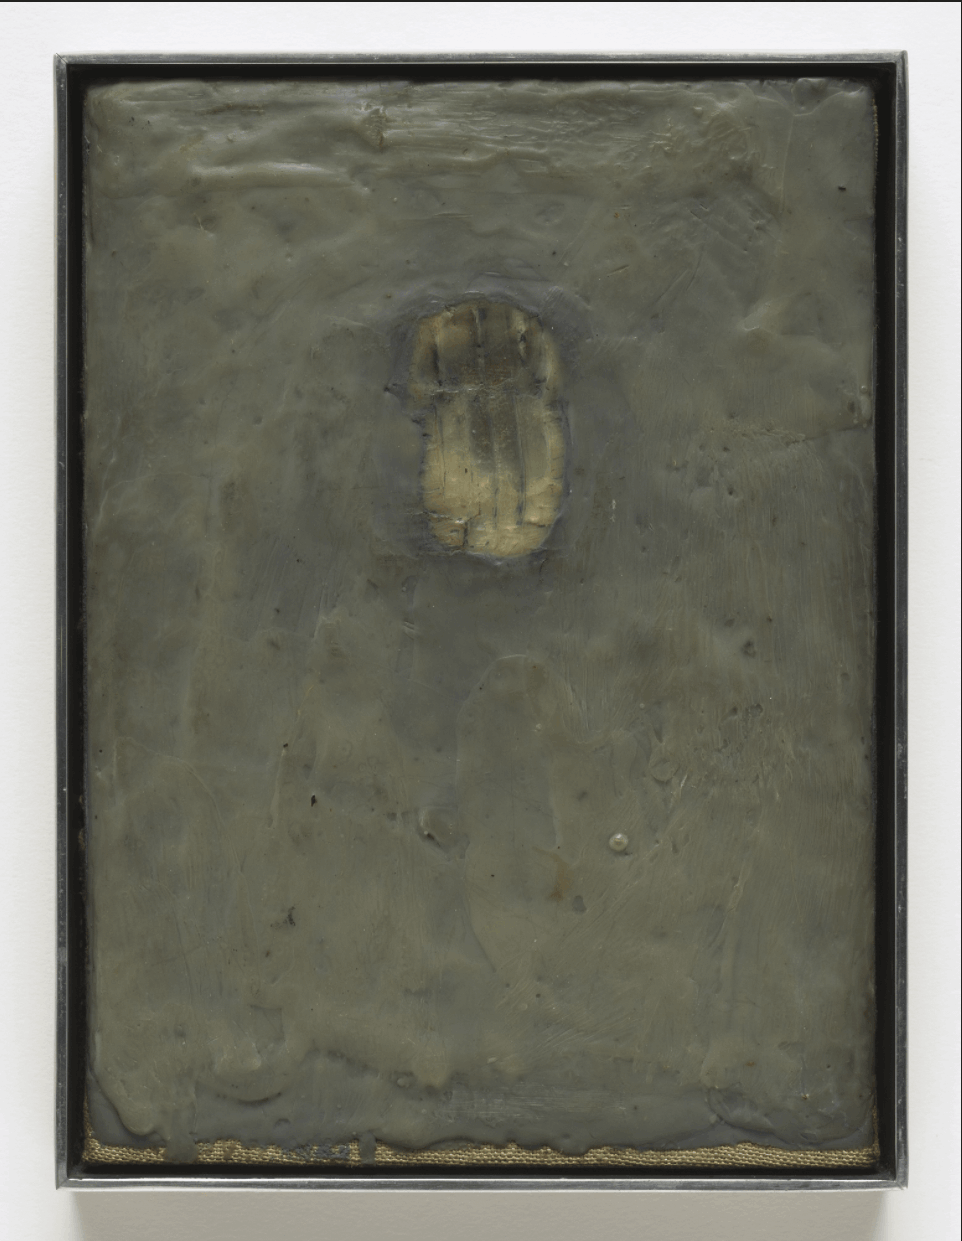 Jasper Johns, Painting Bitten by a Man, 1961